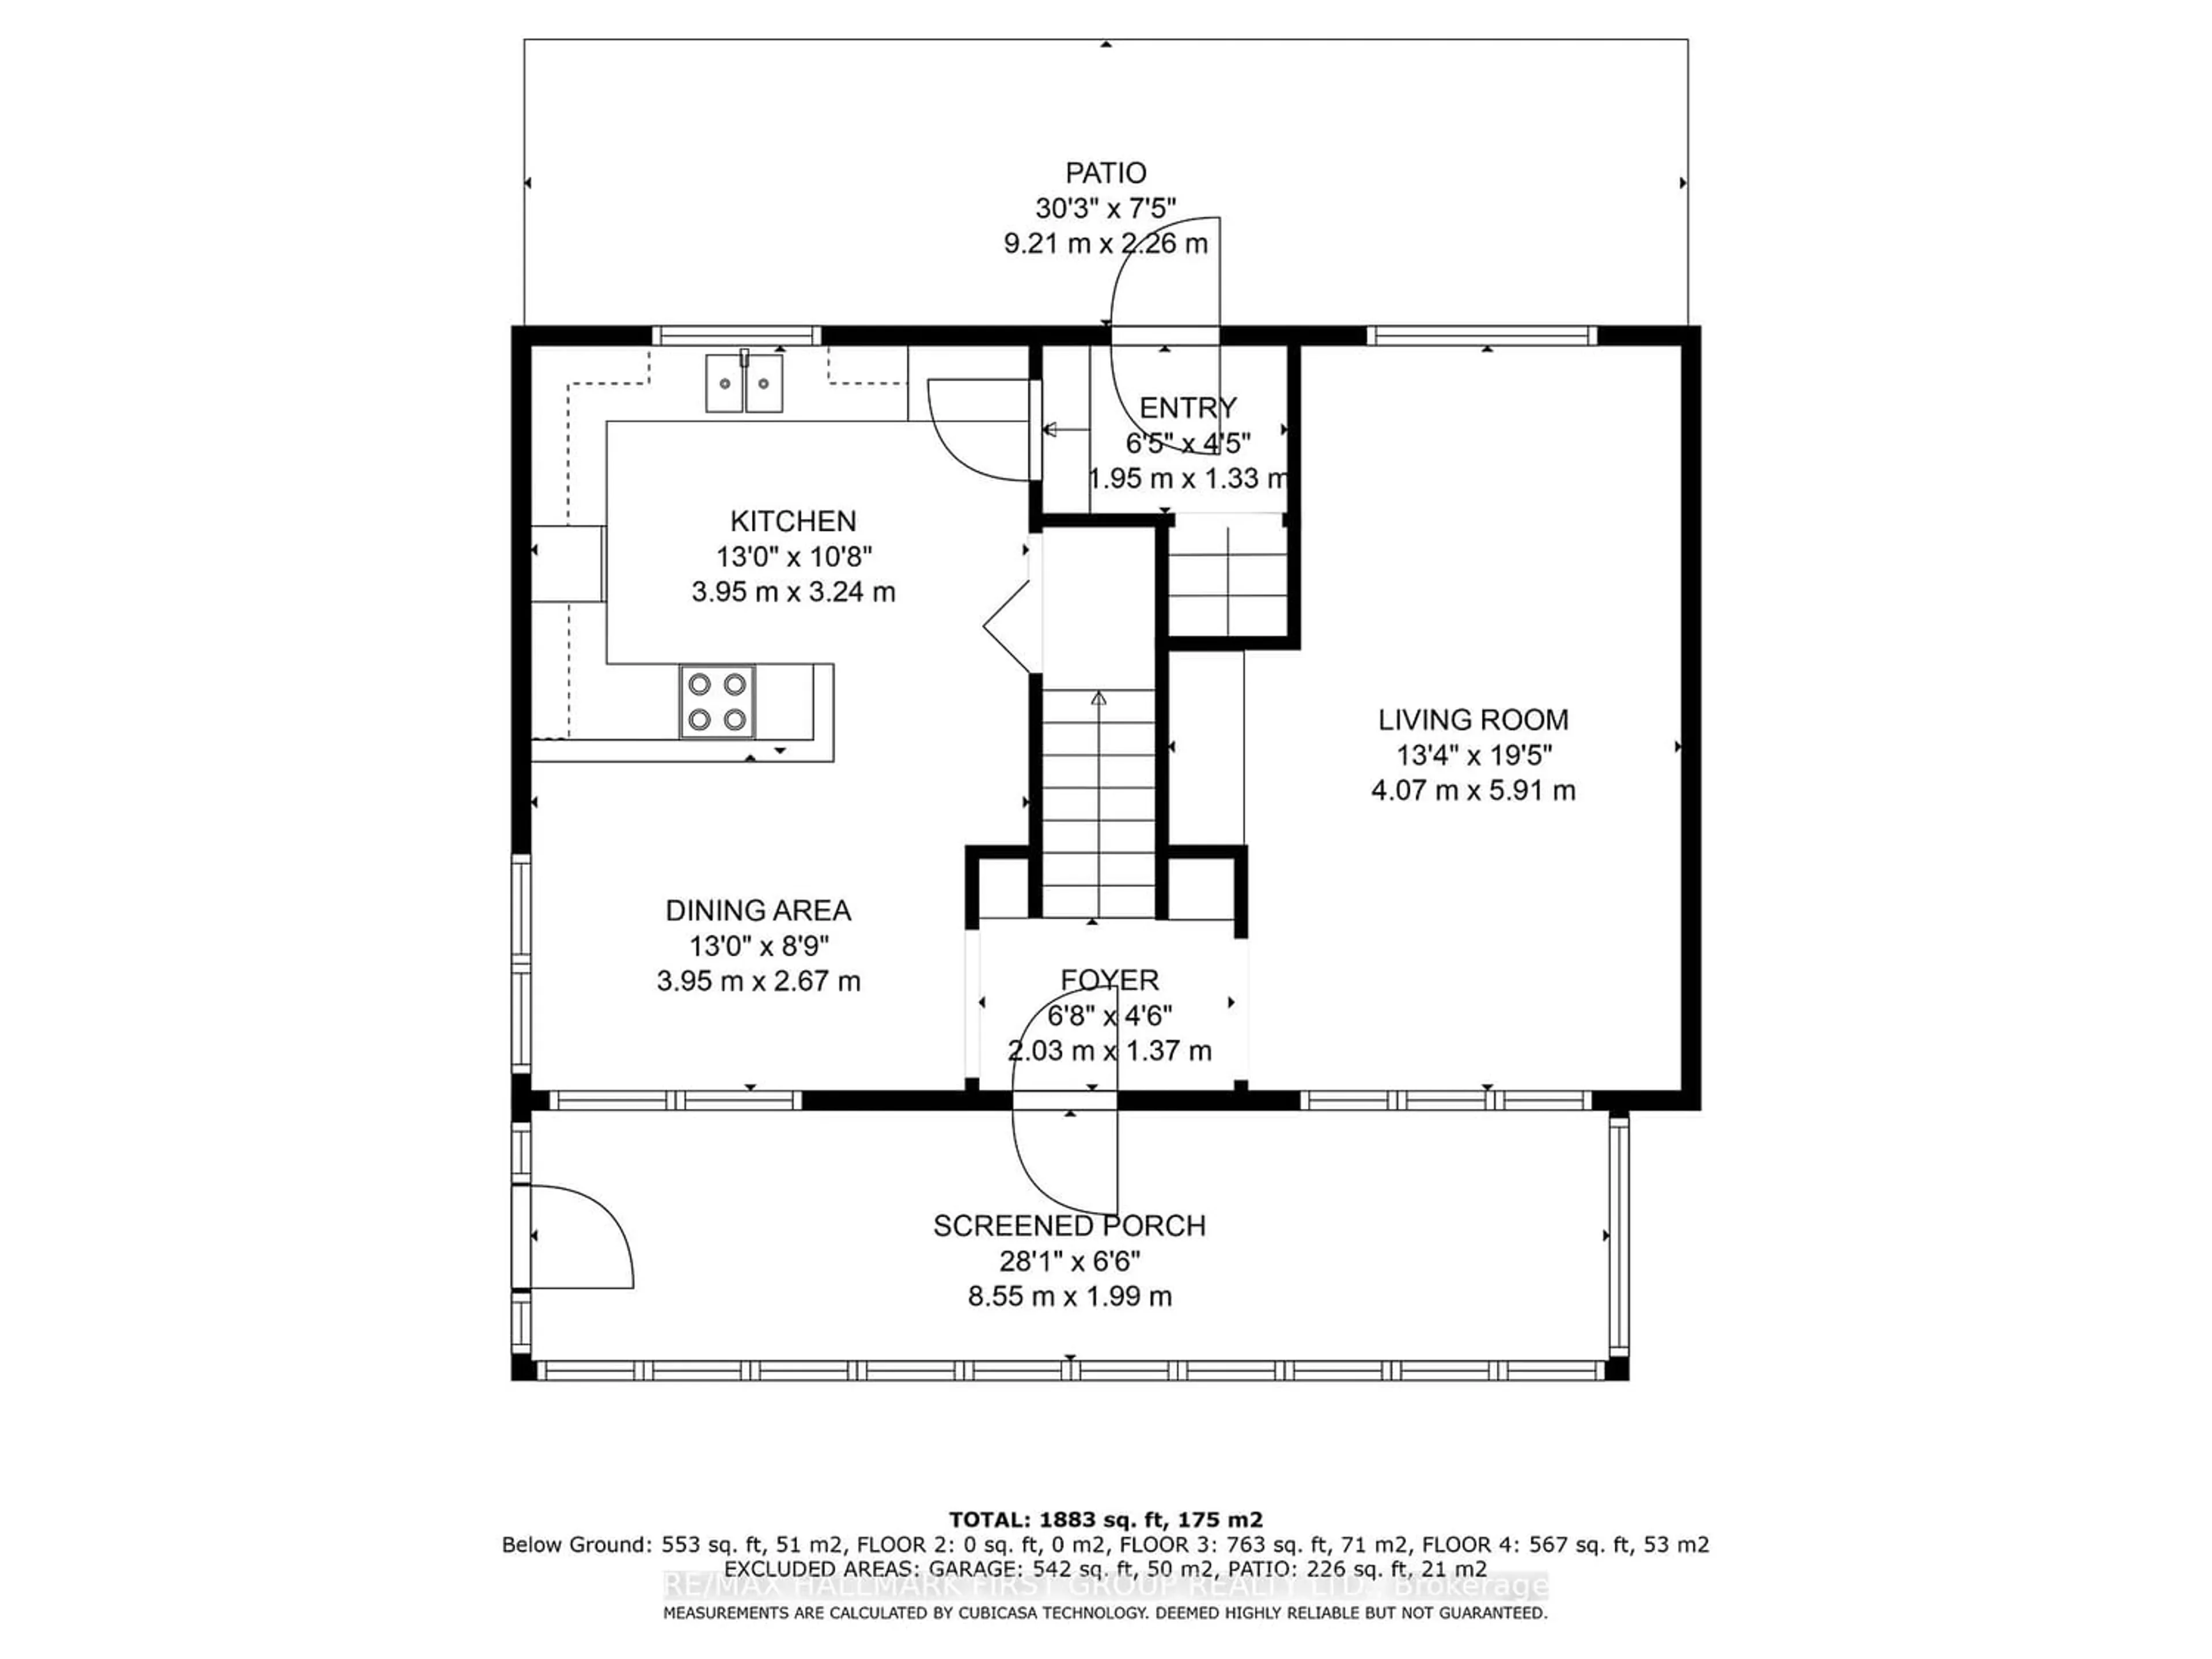 Floor plan for 117 Allan St, Whitby Ontario L1N 3S8